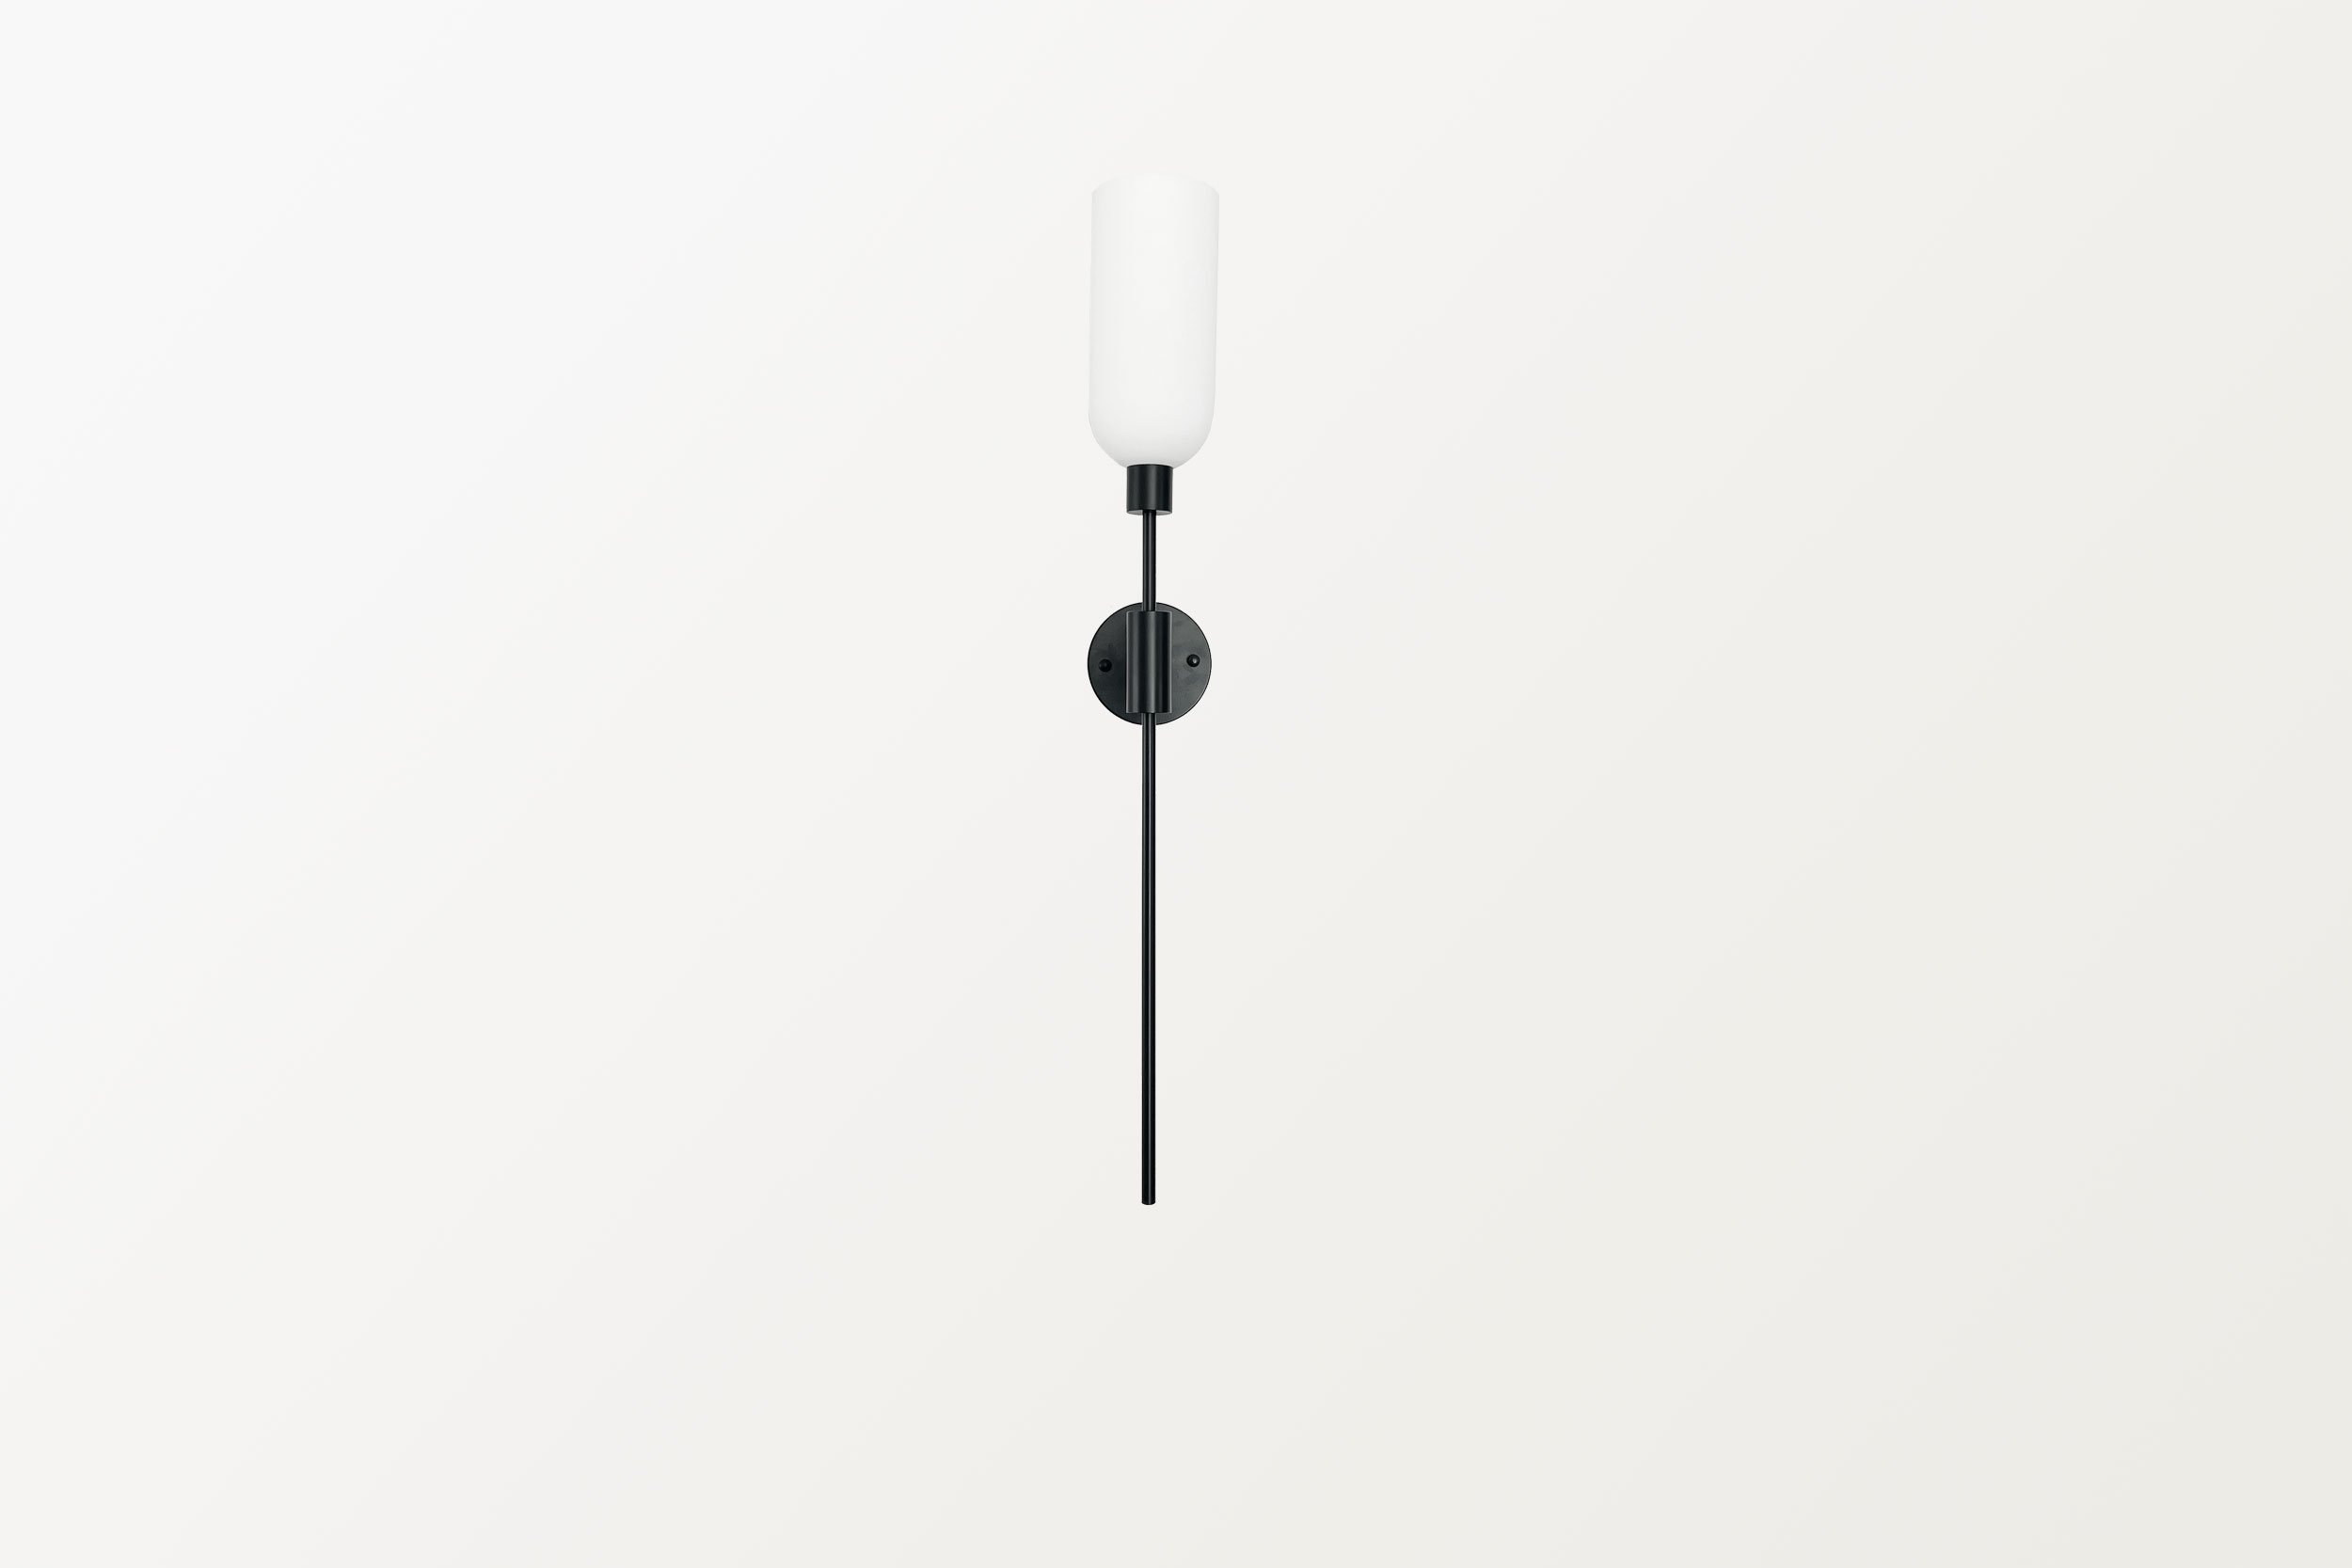 Lampa-HUP-kinkiet-czarna-minimalistyczna-zwis-biały-klosz-farmhouse-moderncountry.jpg